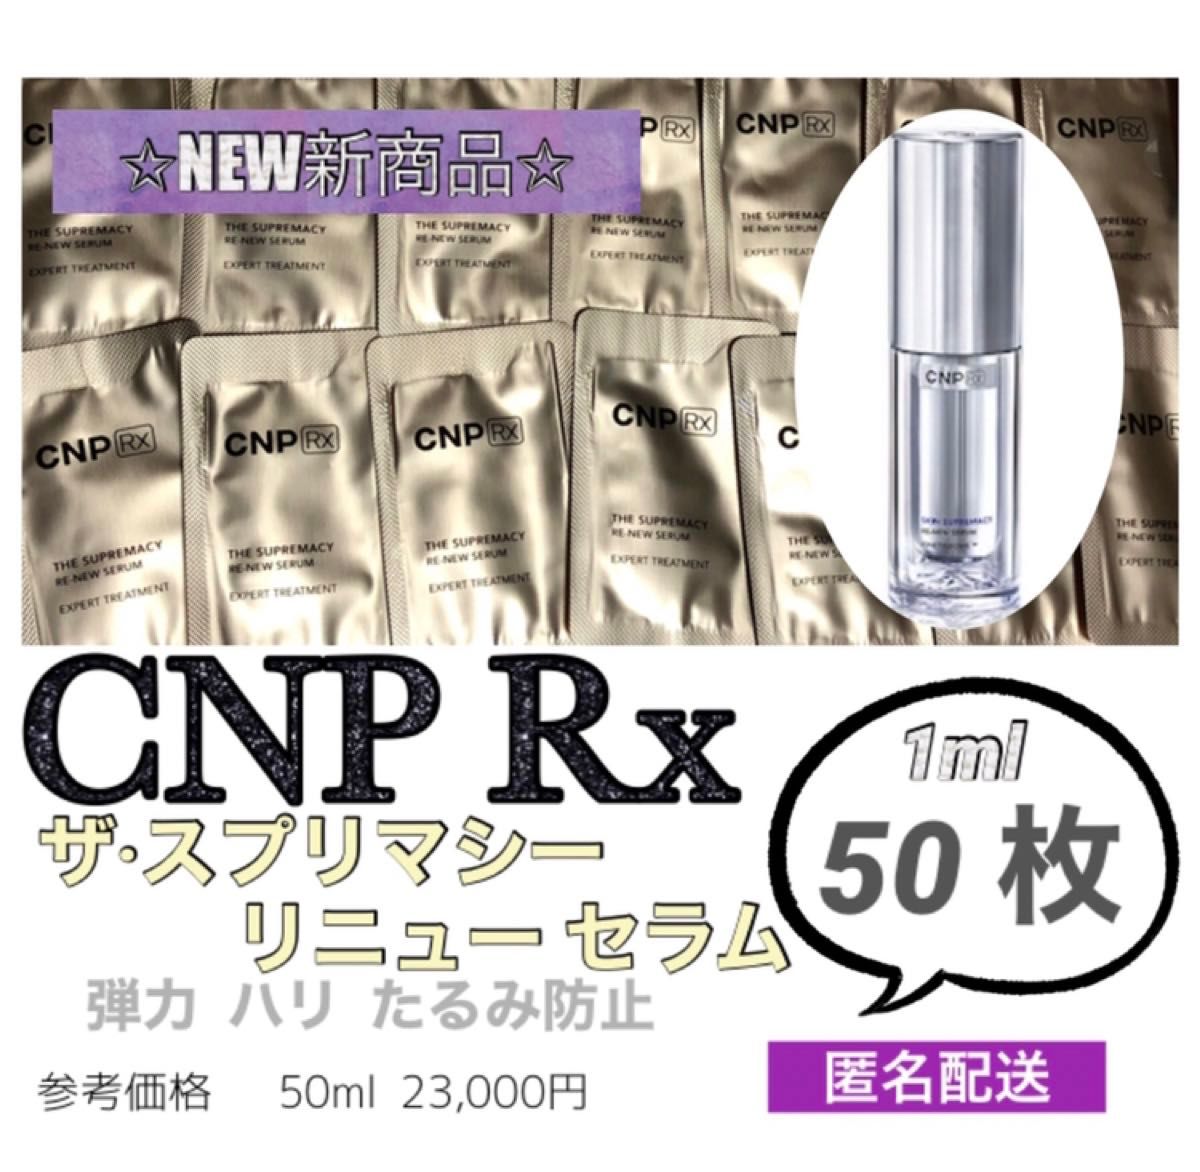 CNP Rx ザスプリマシー リニューセラム 50枚